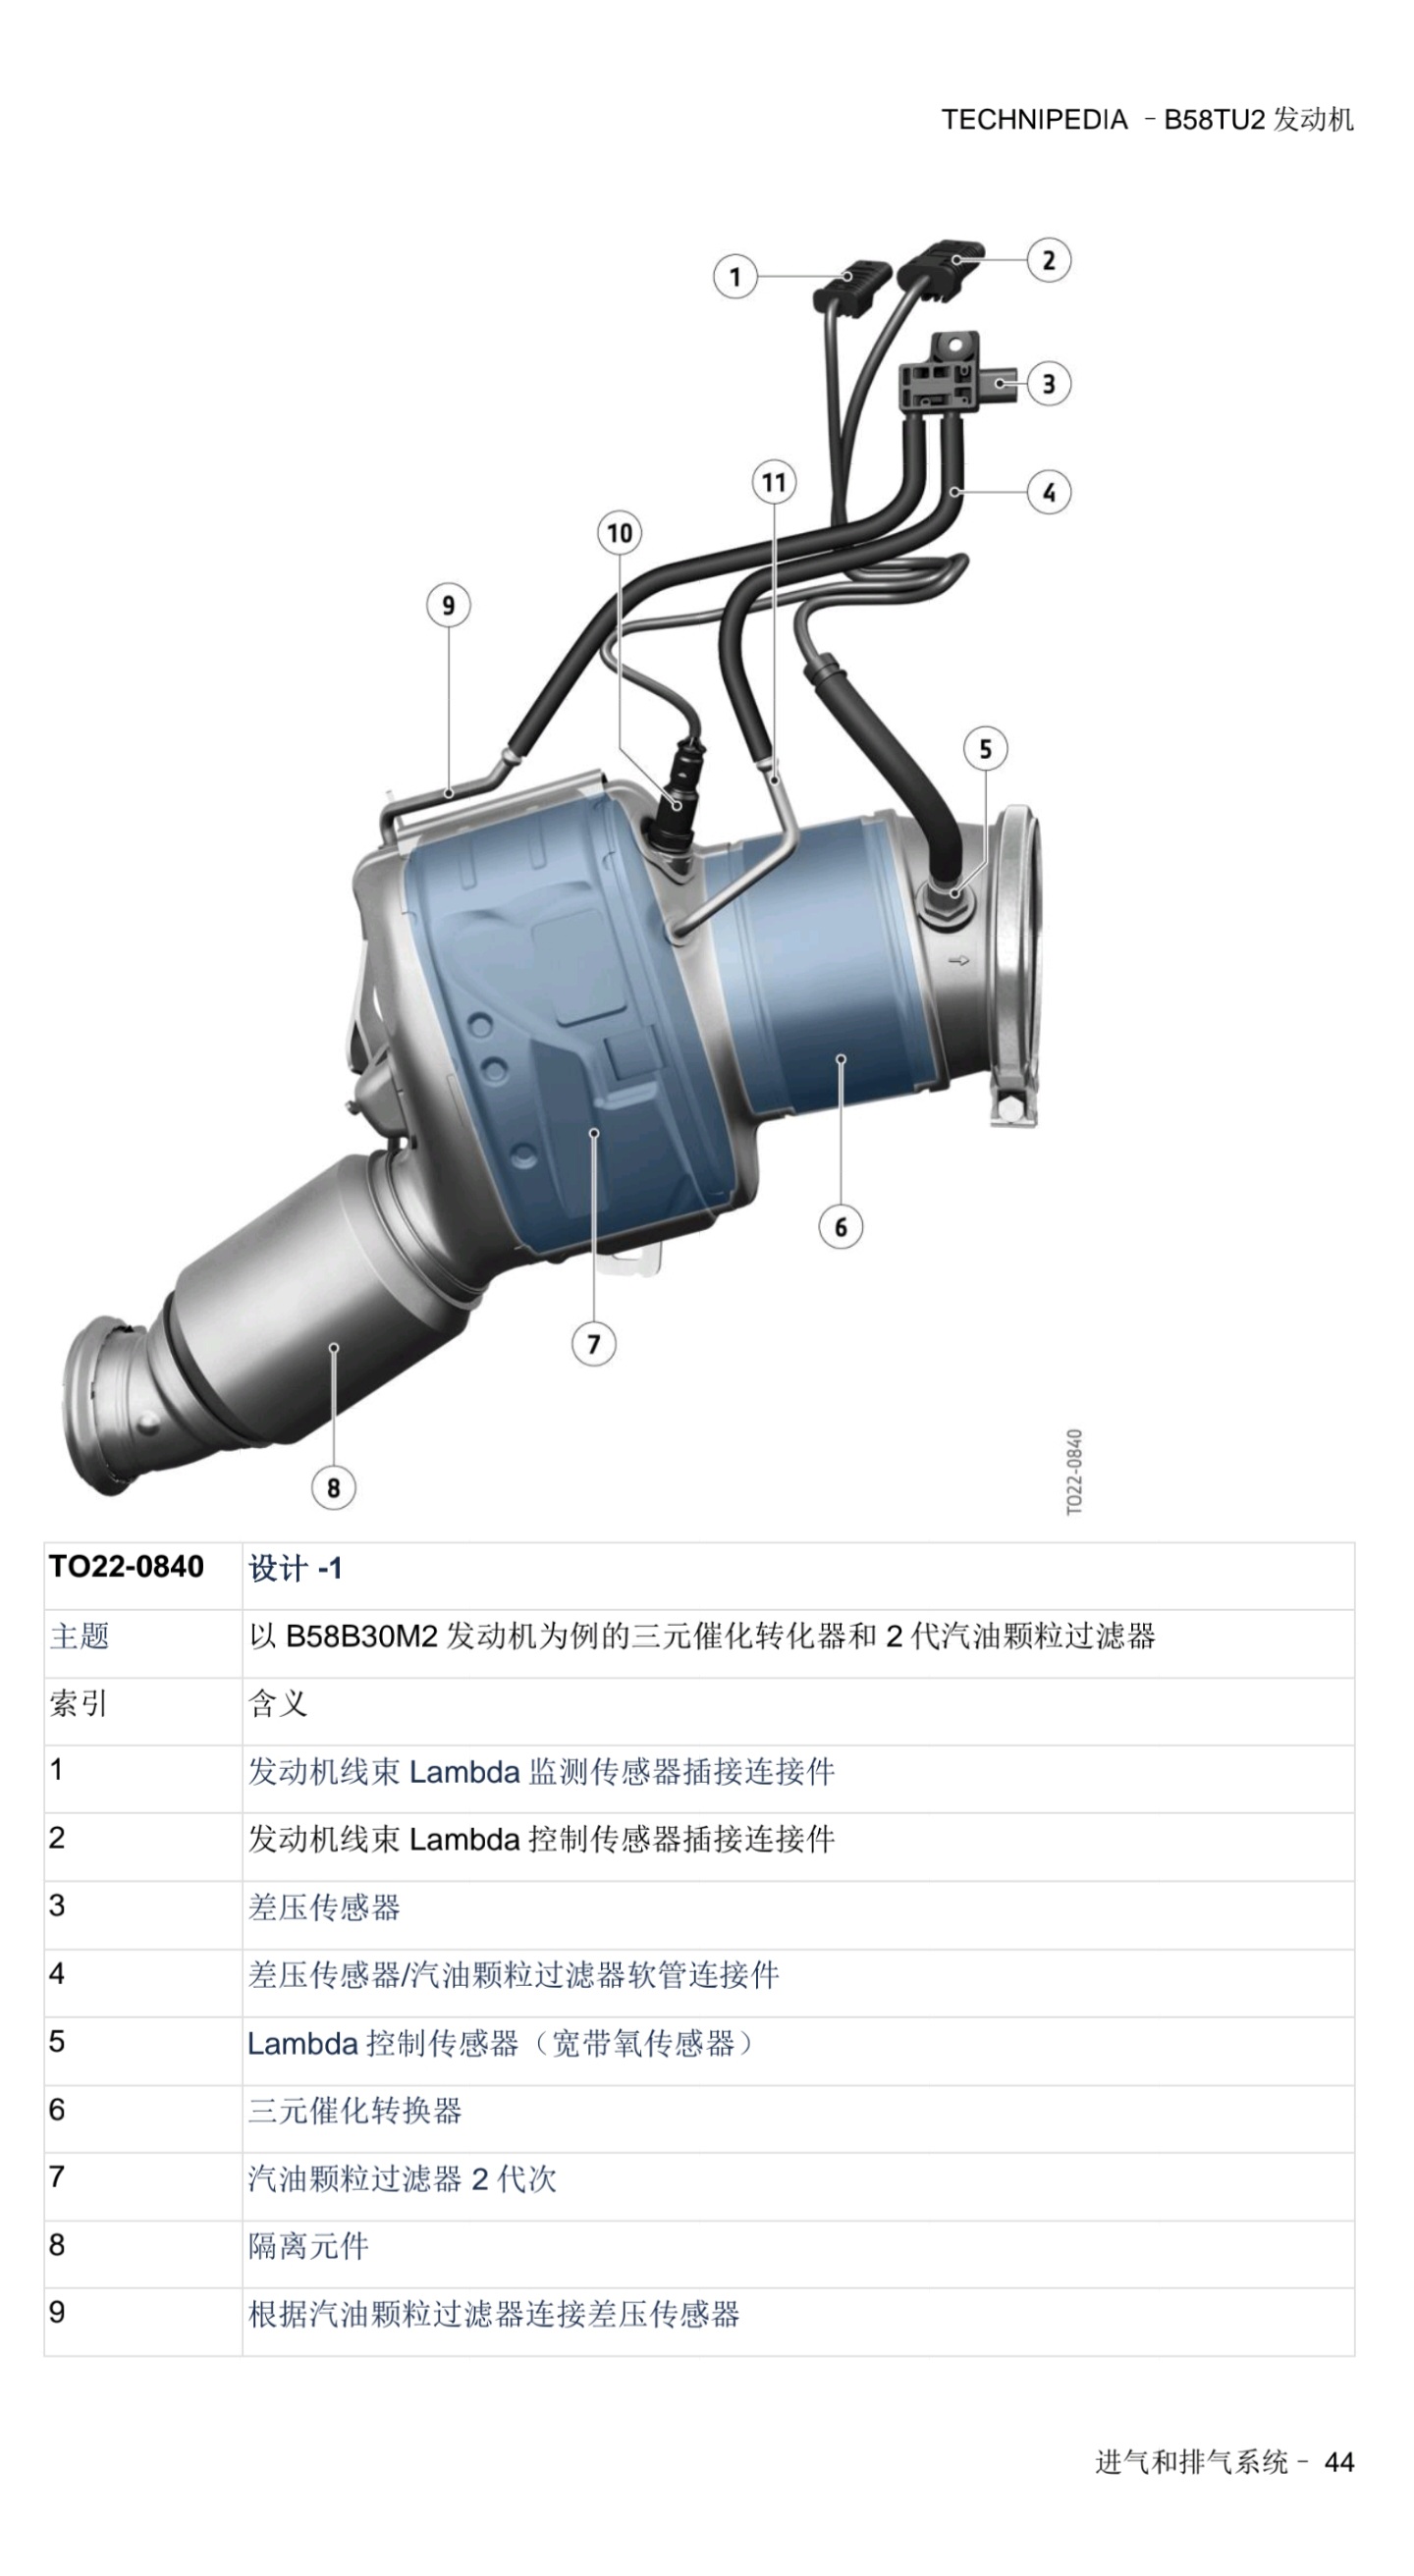 宝马 B58TU2发动机 技术百科